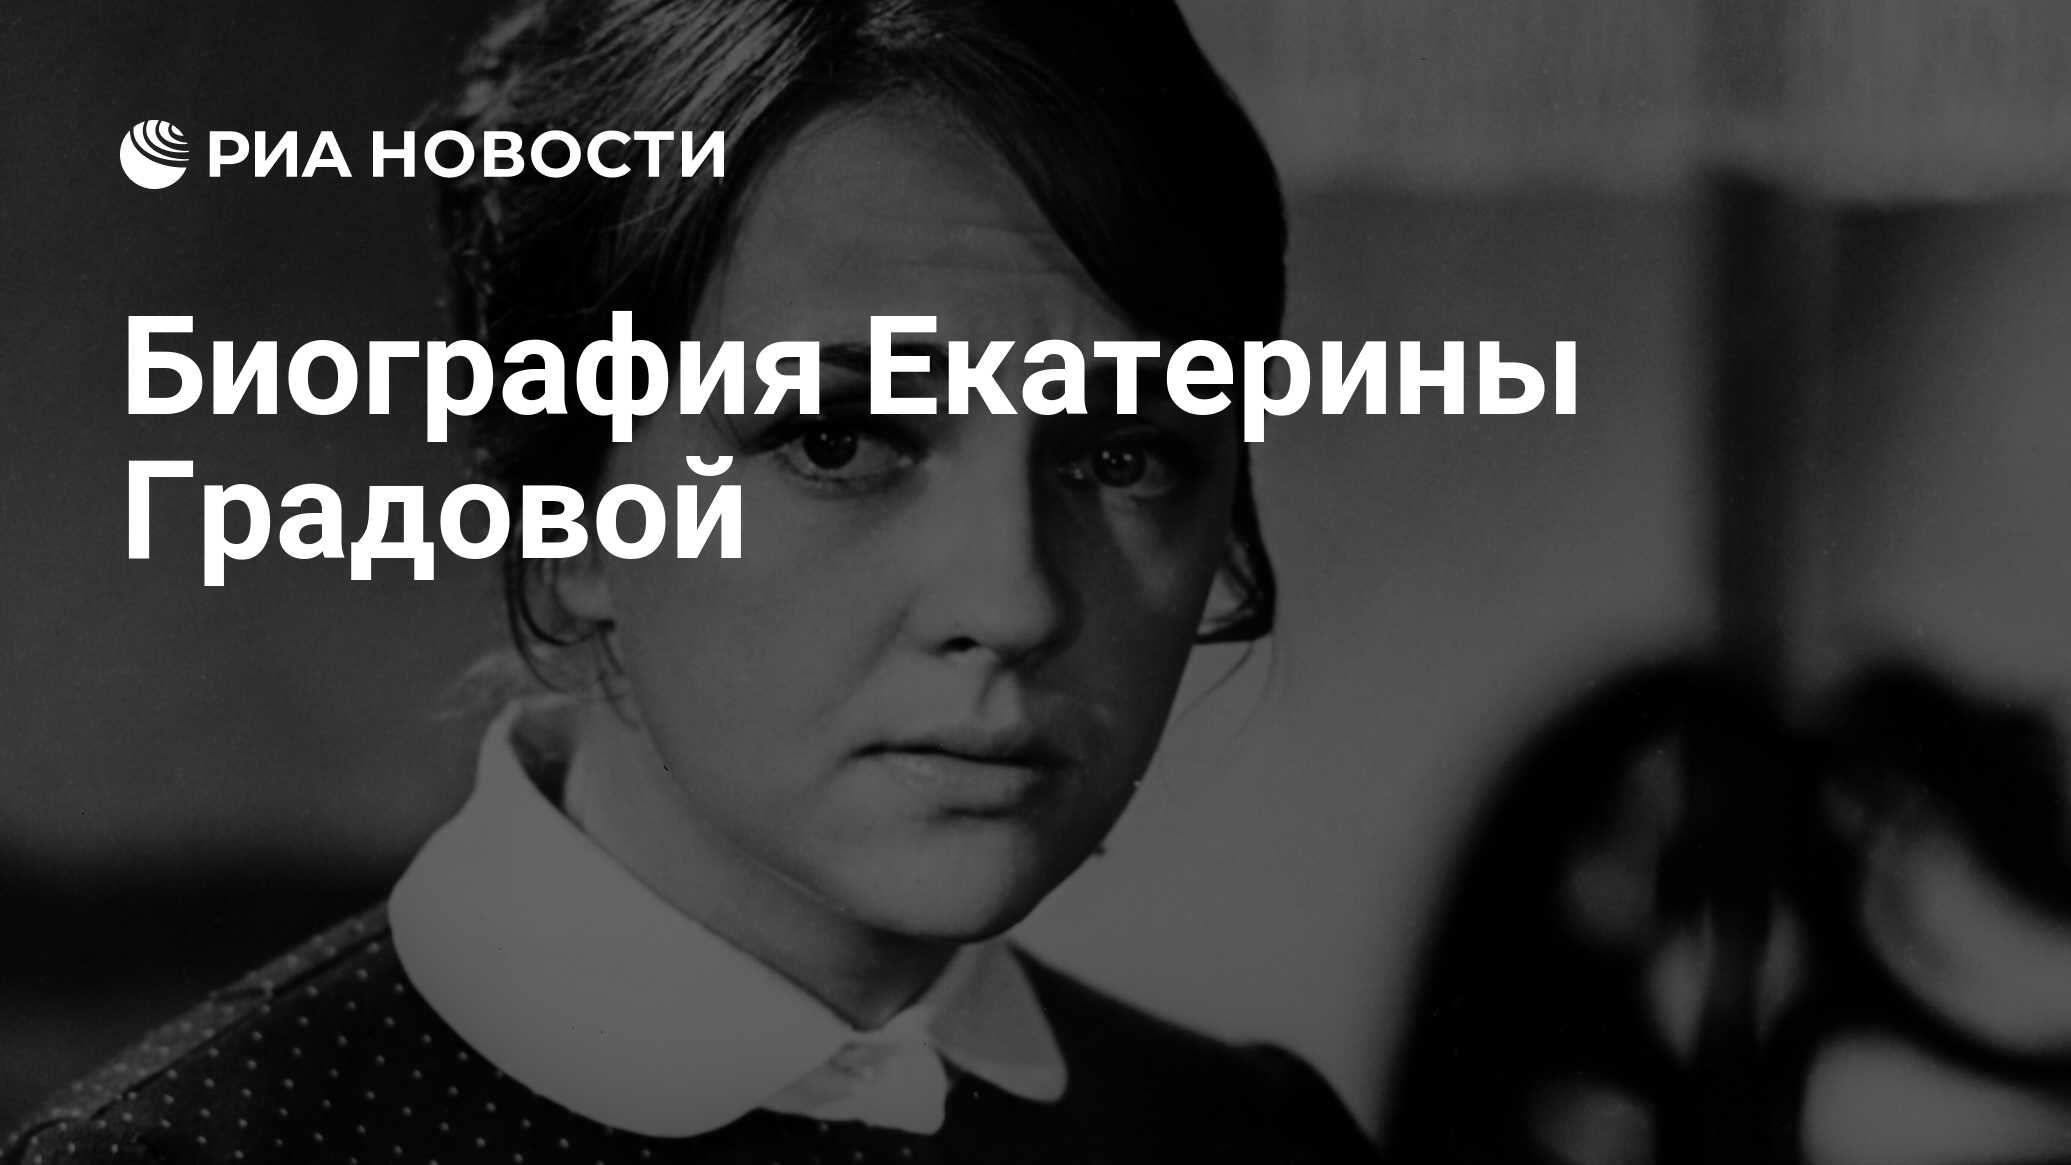 Екатерина Градова: биография и личная жизнь известной актрисы Центрального театра России